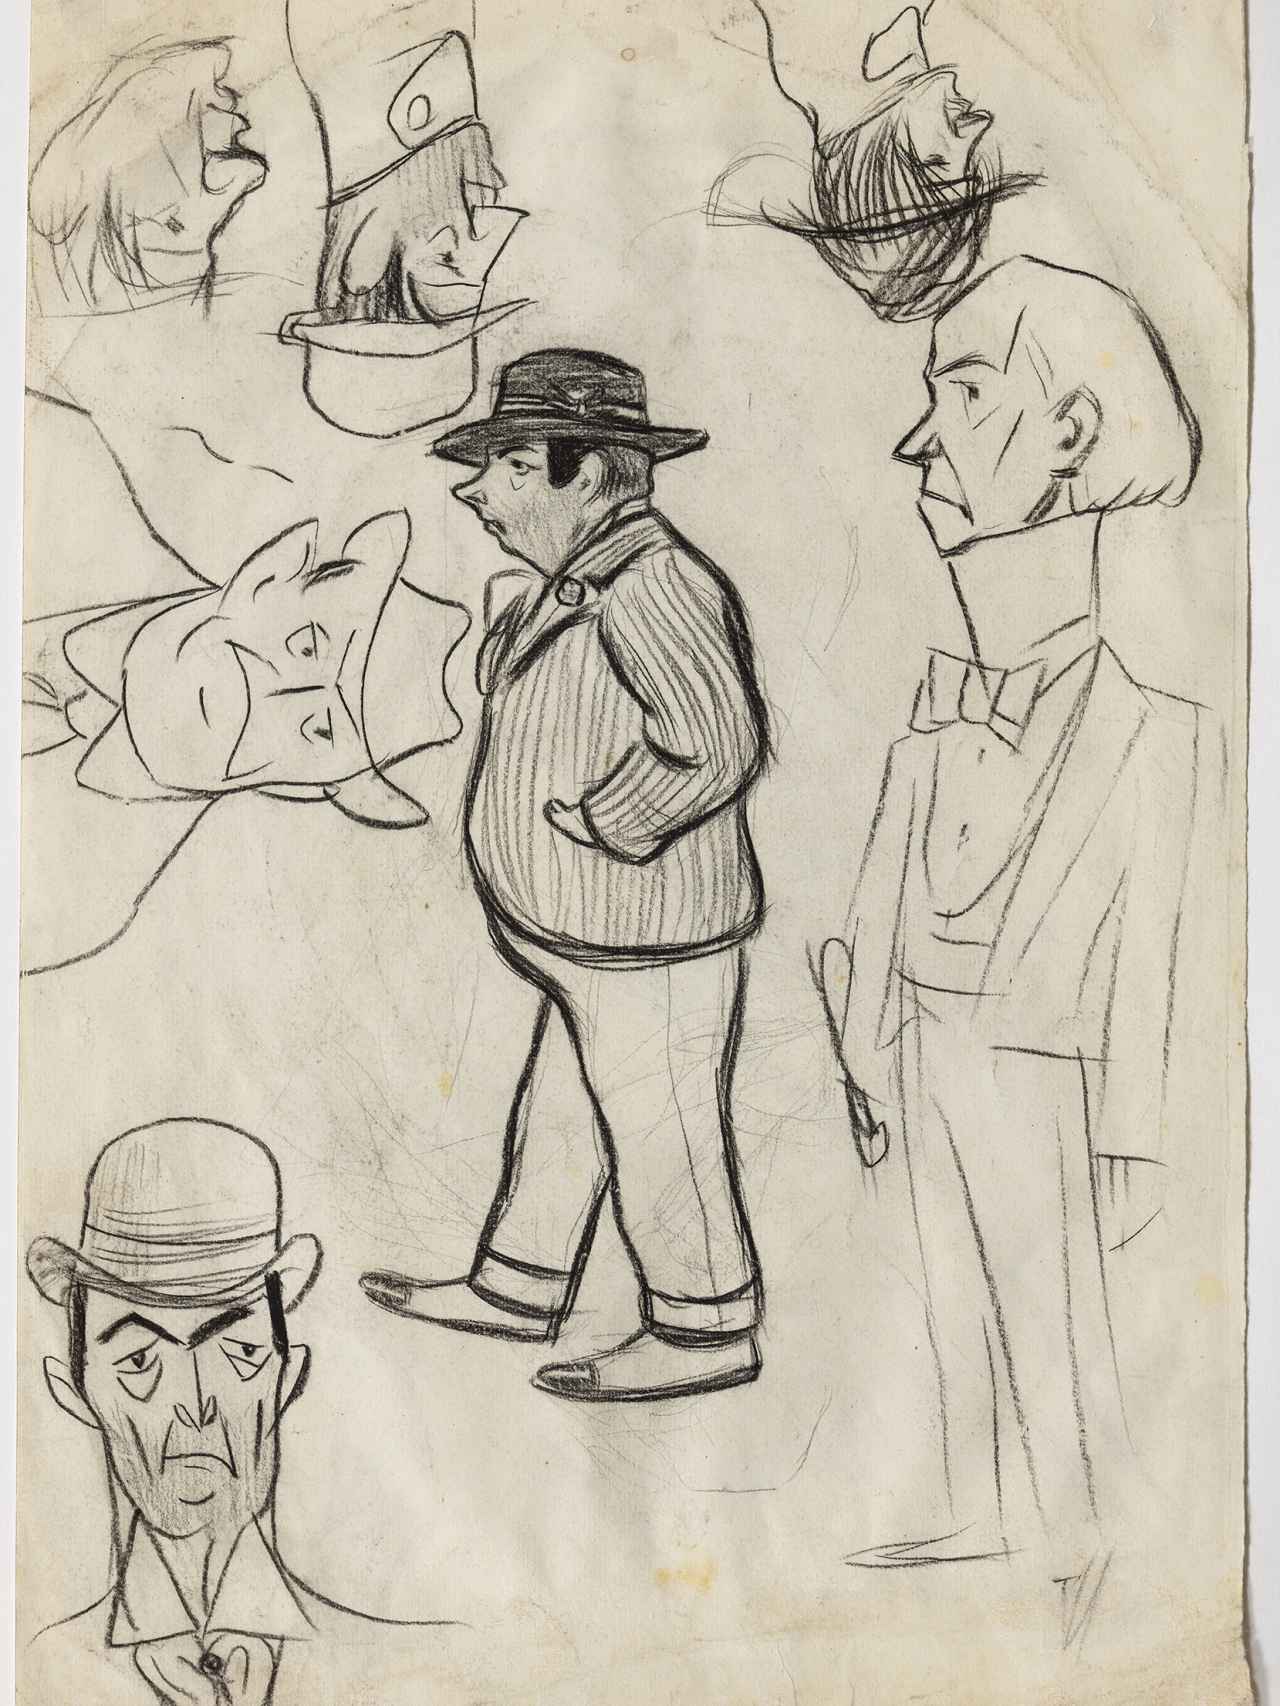 Pablo Picasso: Tipos de la calle y caricaturas Barcelona, 1899.